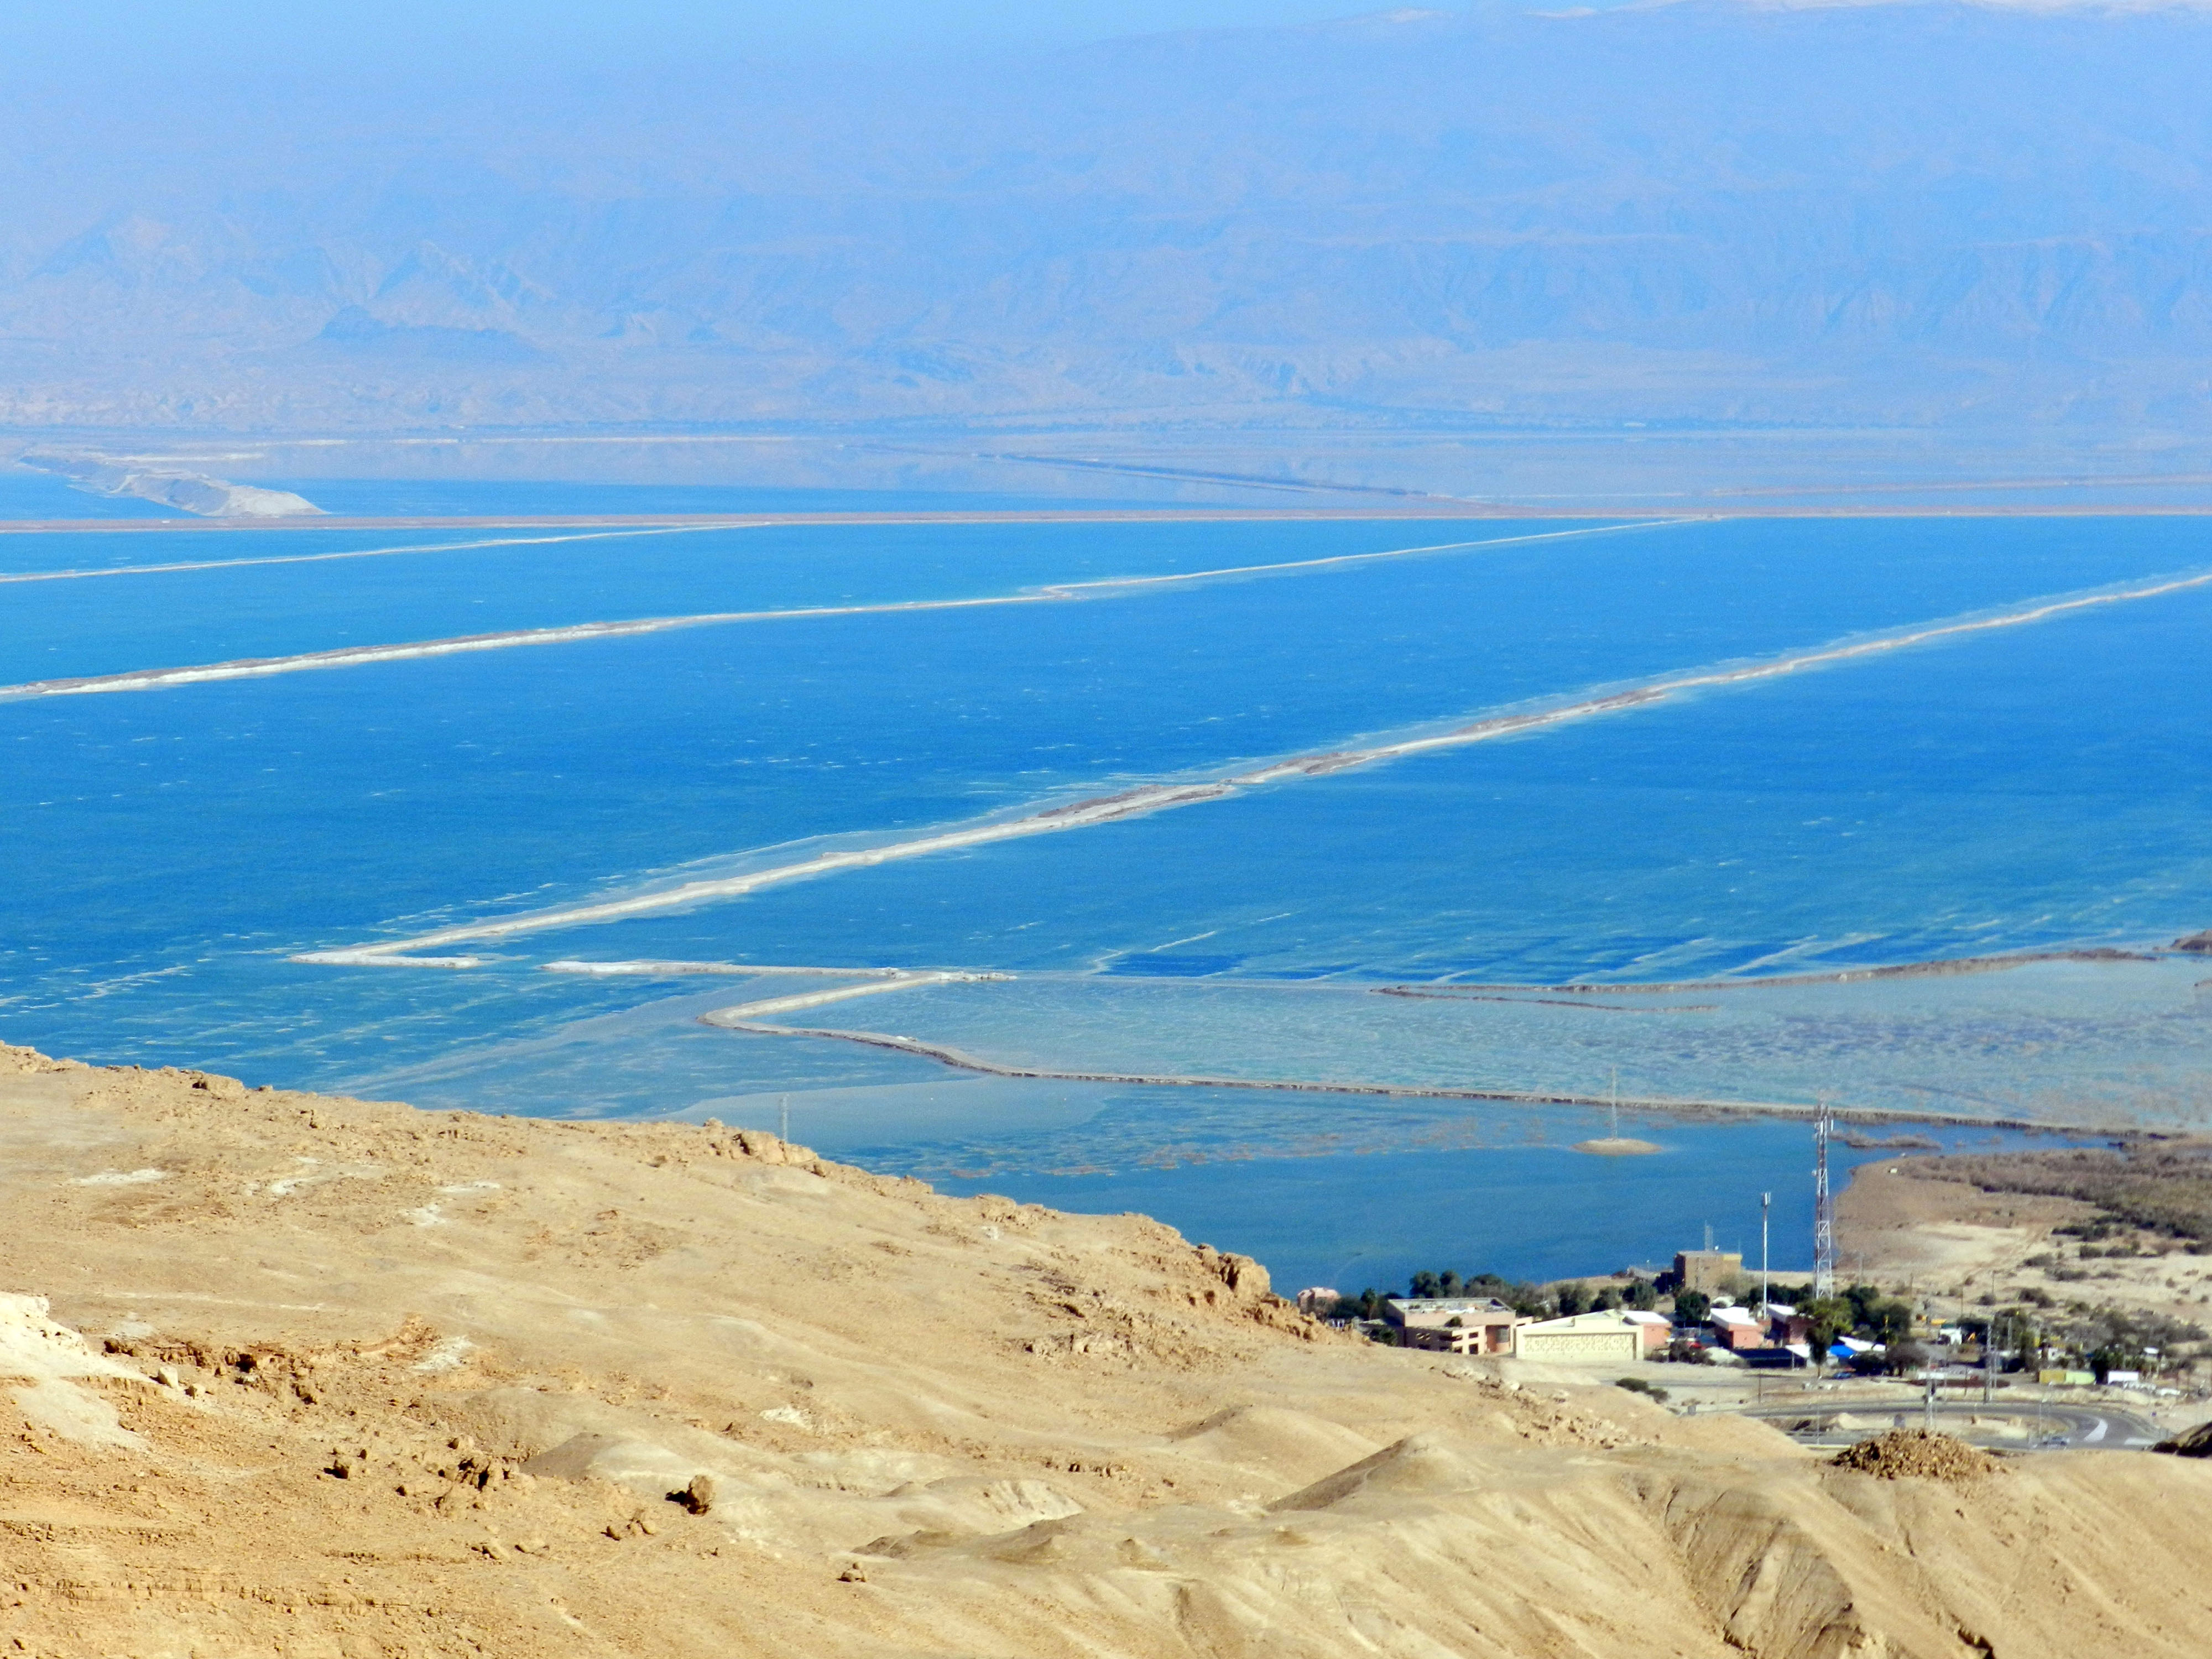 Dead Sea, Israel